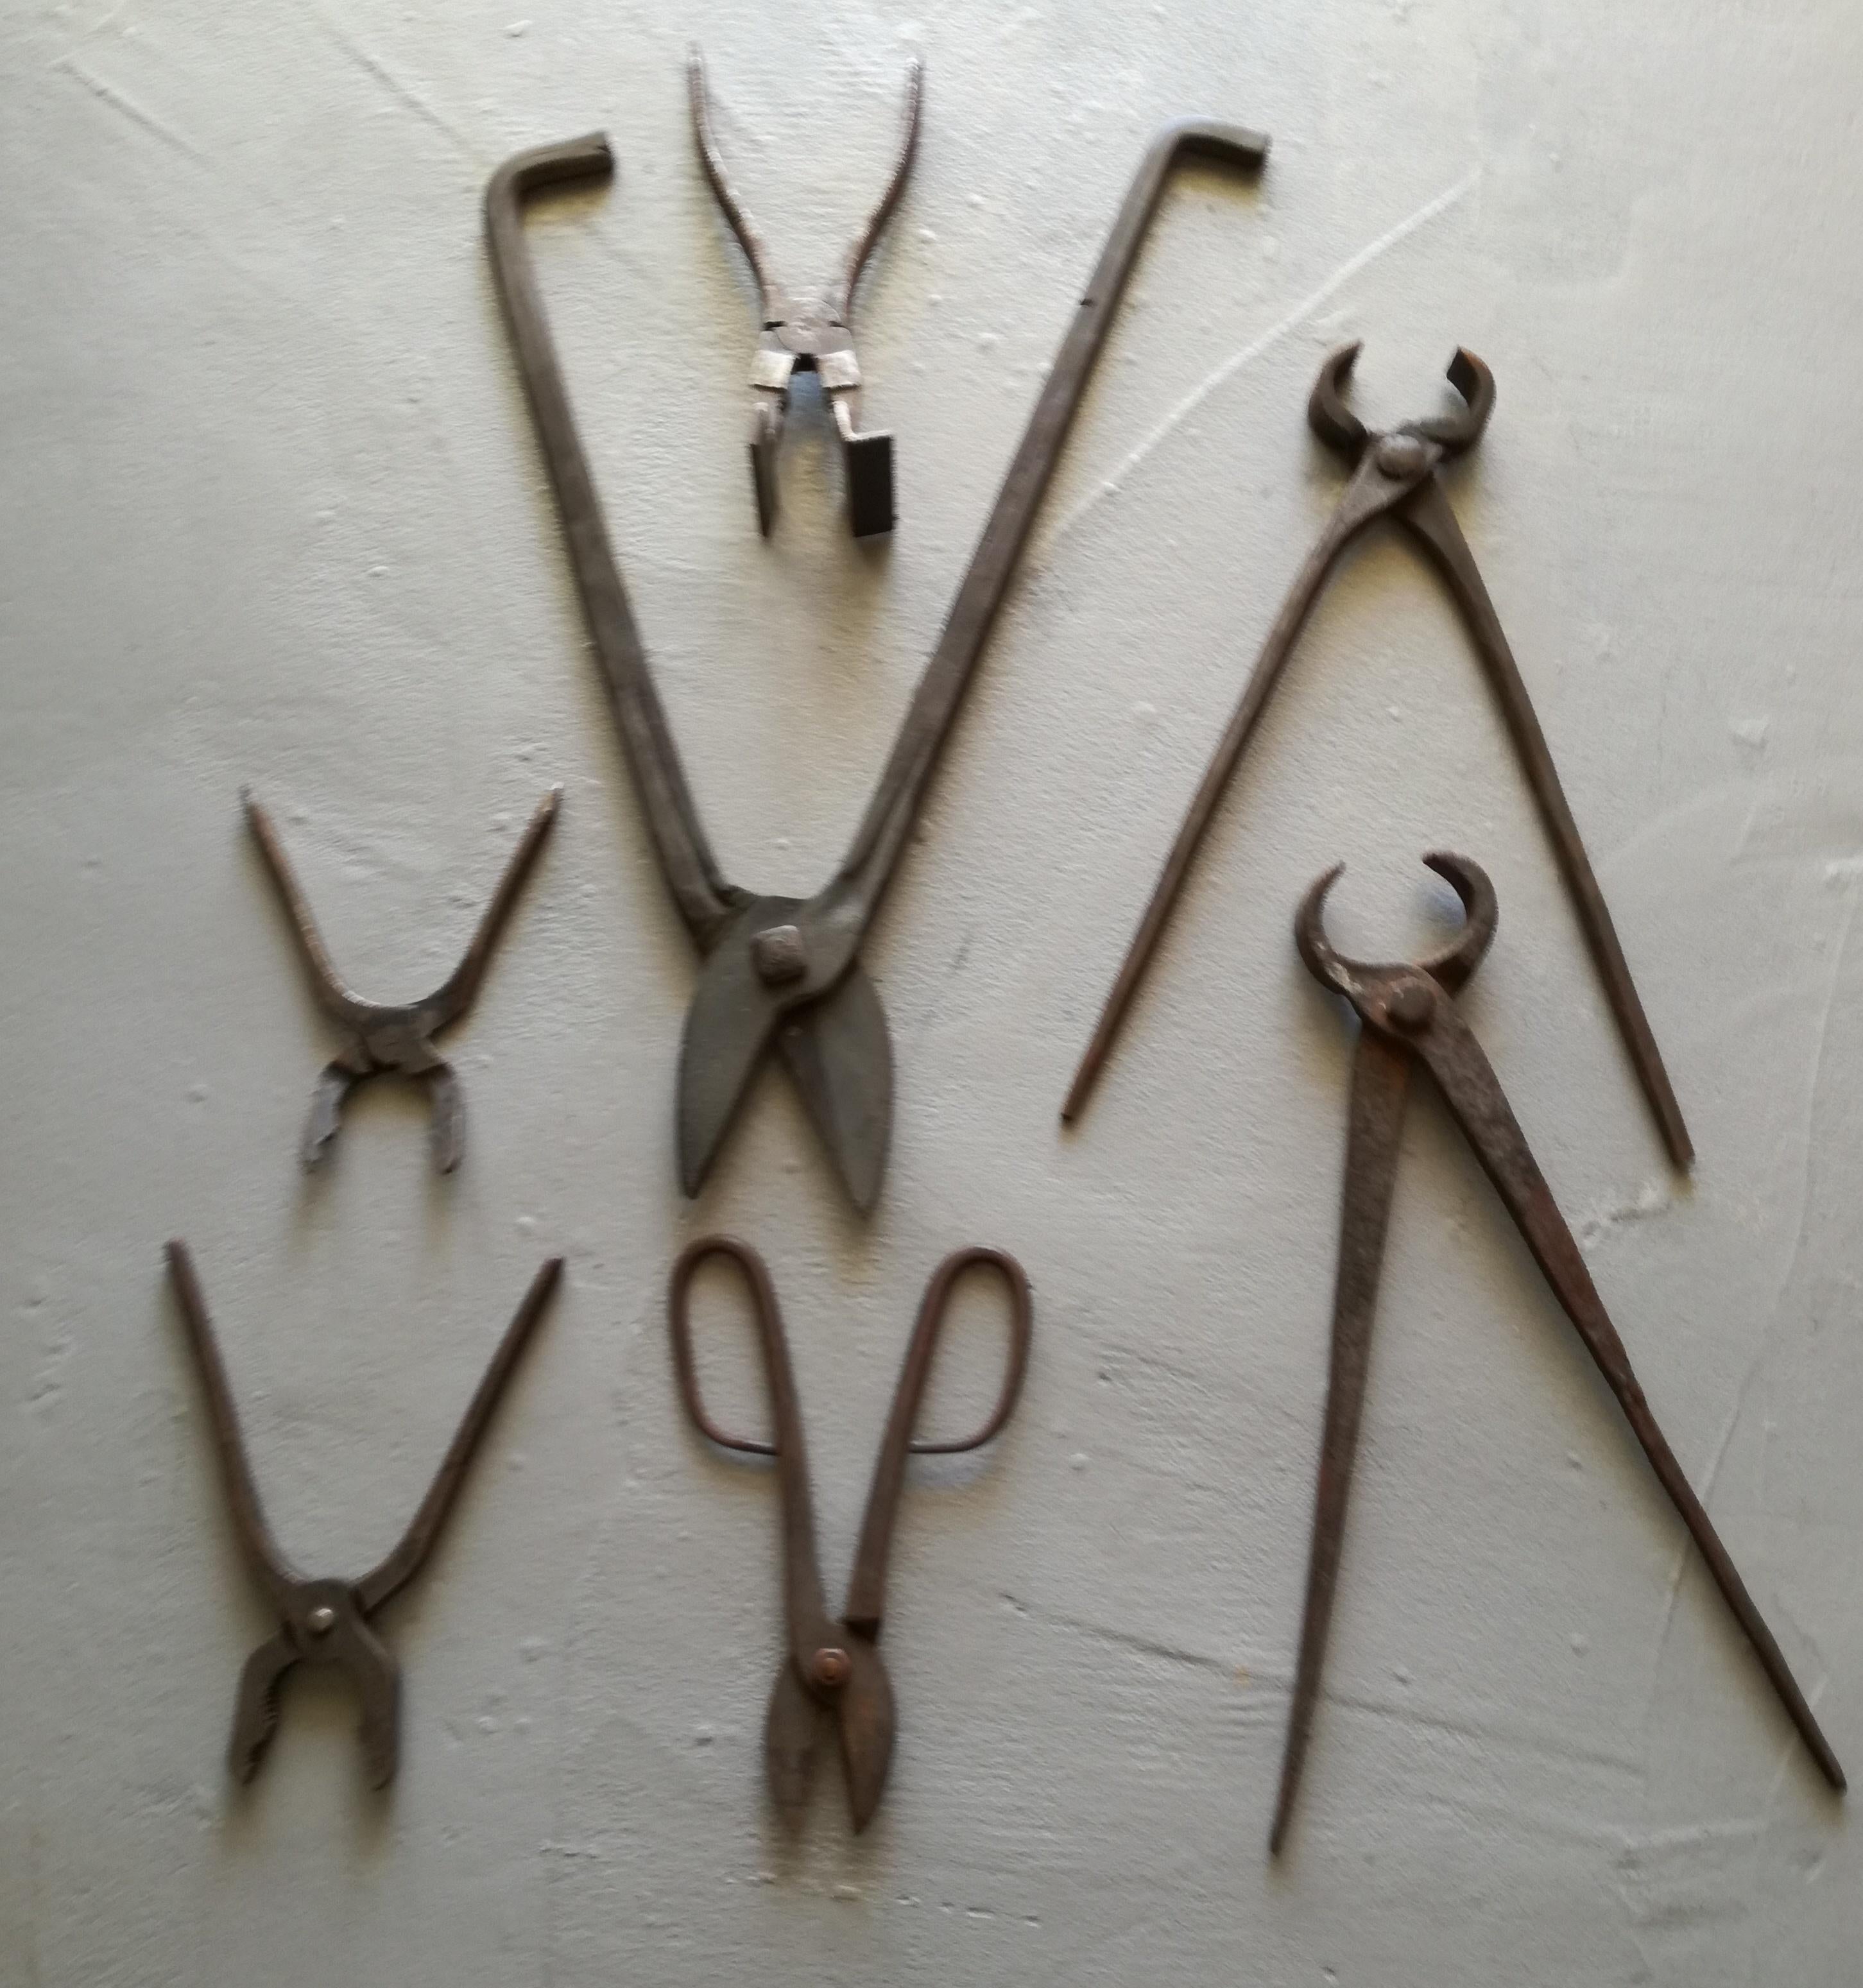 Ensemble de sept outils de forge en métal (cisailles et tenailles) provenant d'un atelier de forgeron, années 1940-1950. Différents types et tailles. Les mesures indiquées se réfèrent à l'outil le plus grand. Bon état : il y a un peu de rouille mais